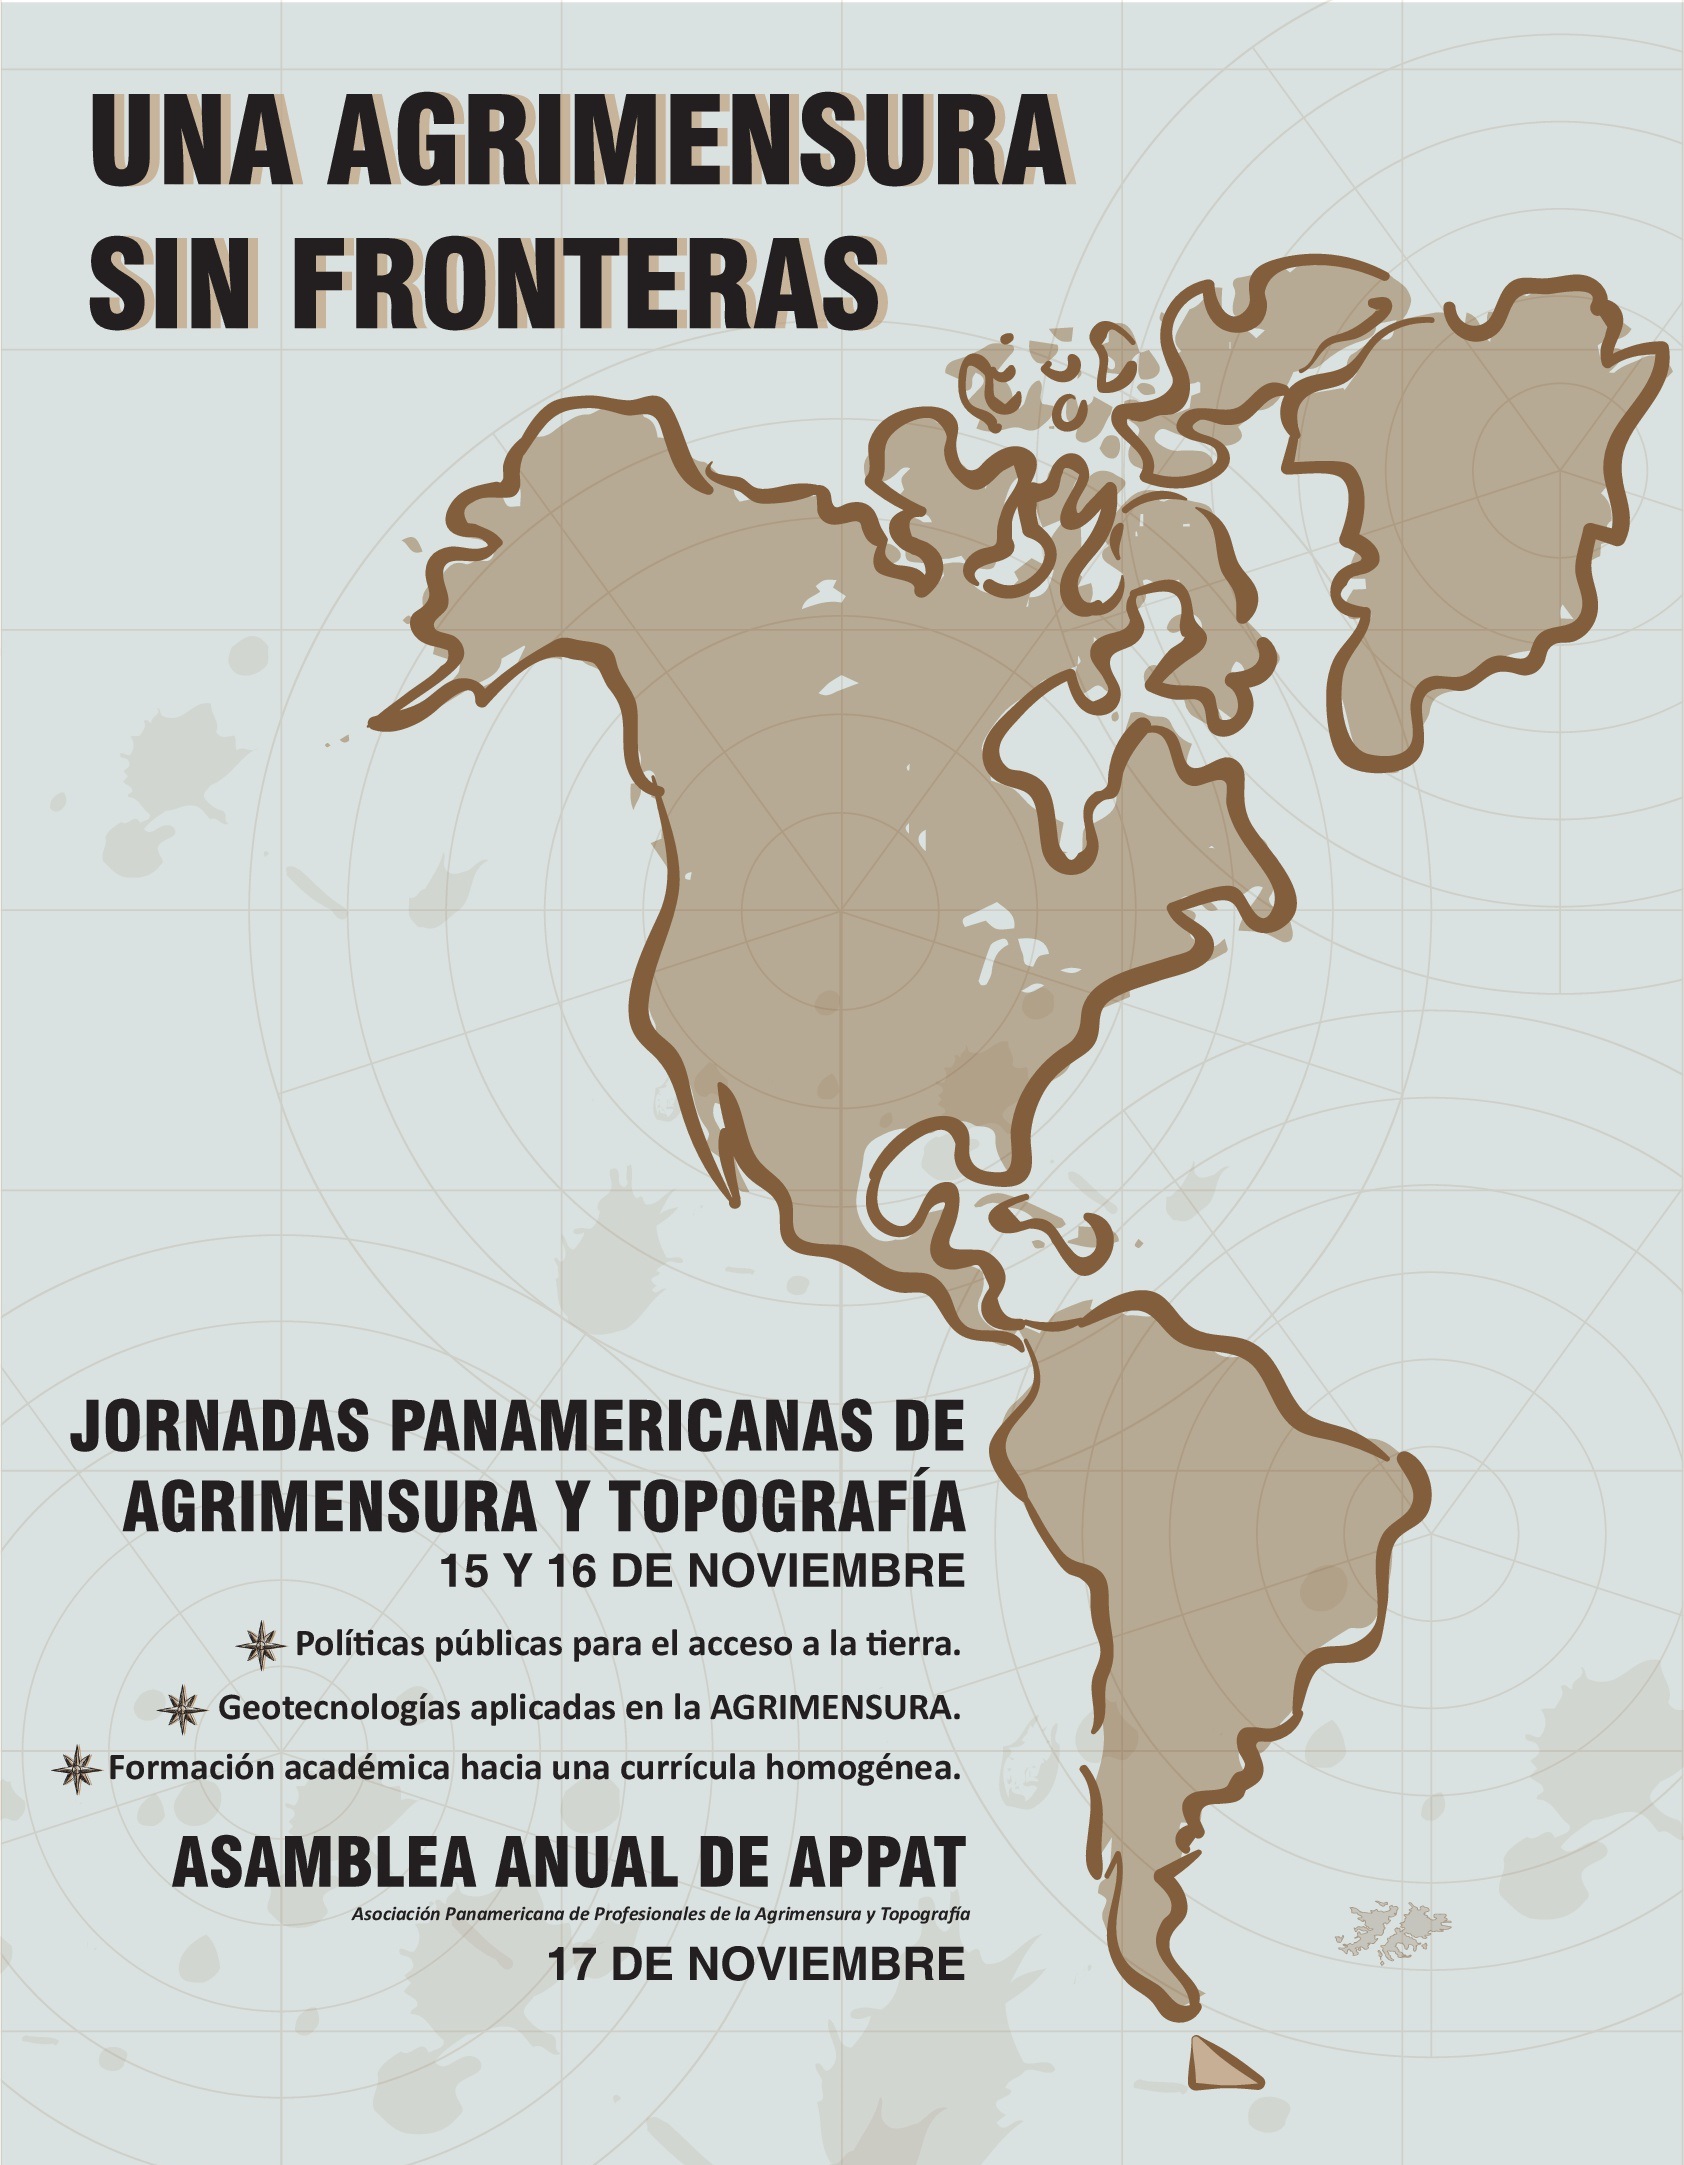 Jornadas Panamericanas de Agrimensura y Topografía